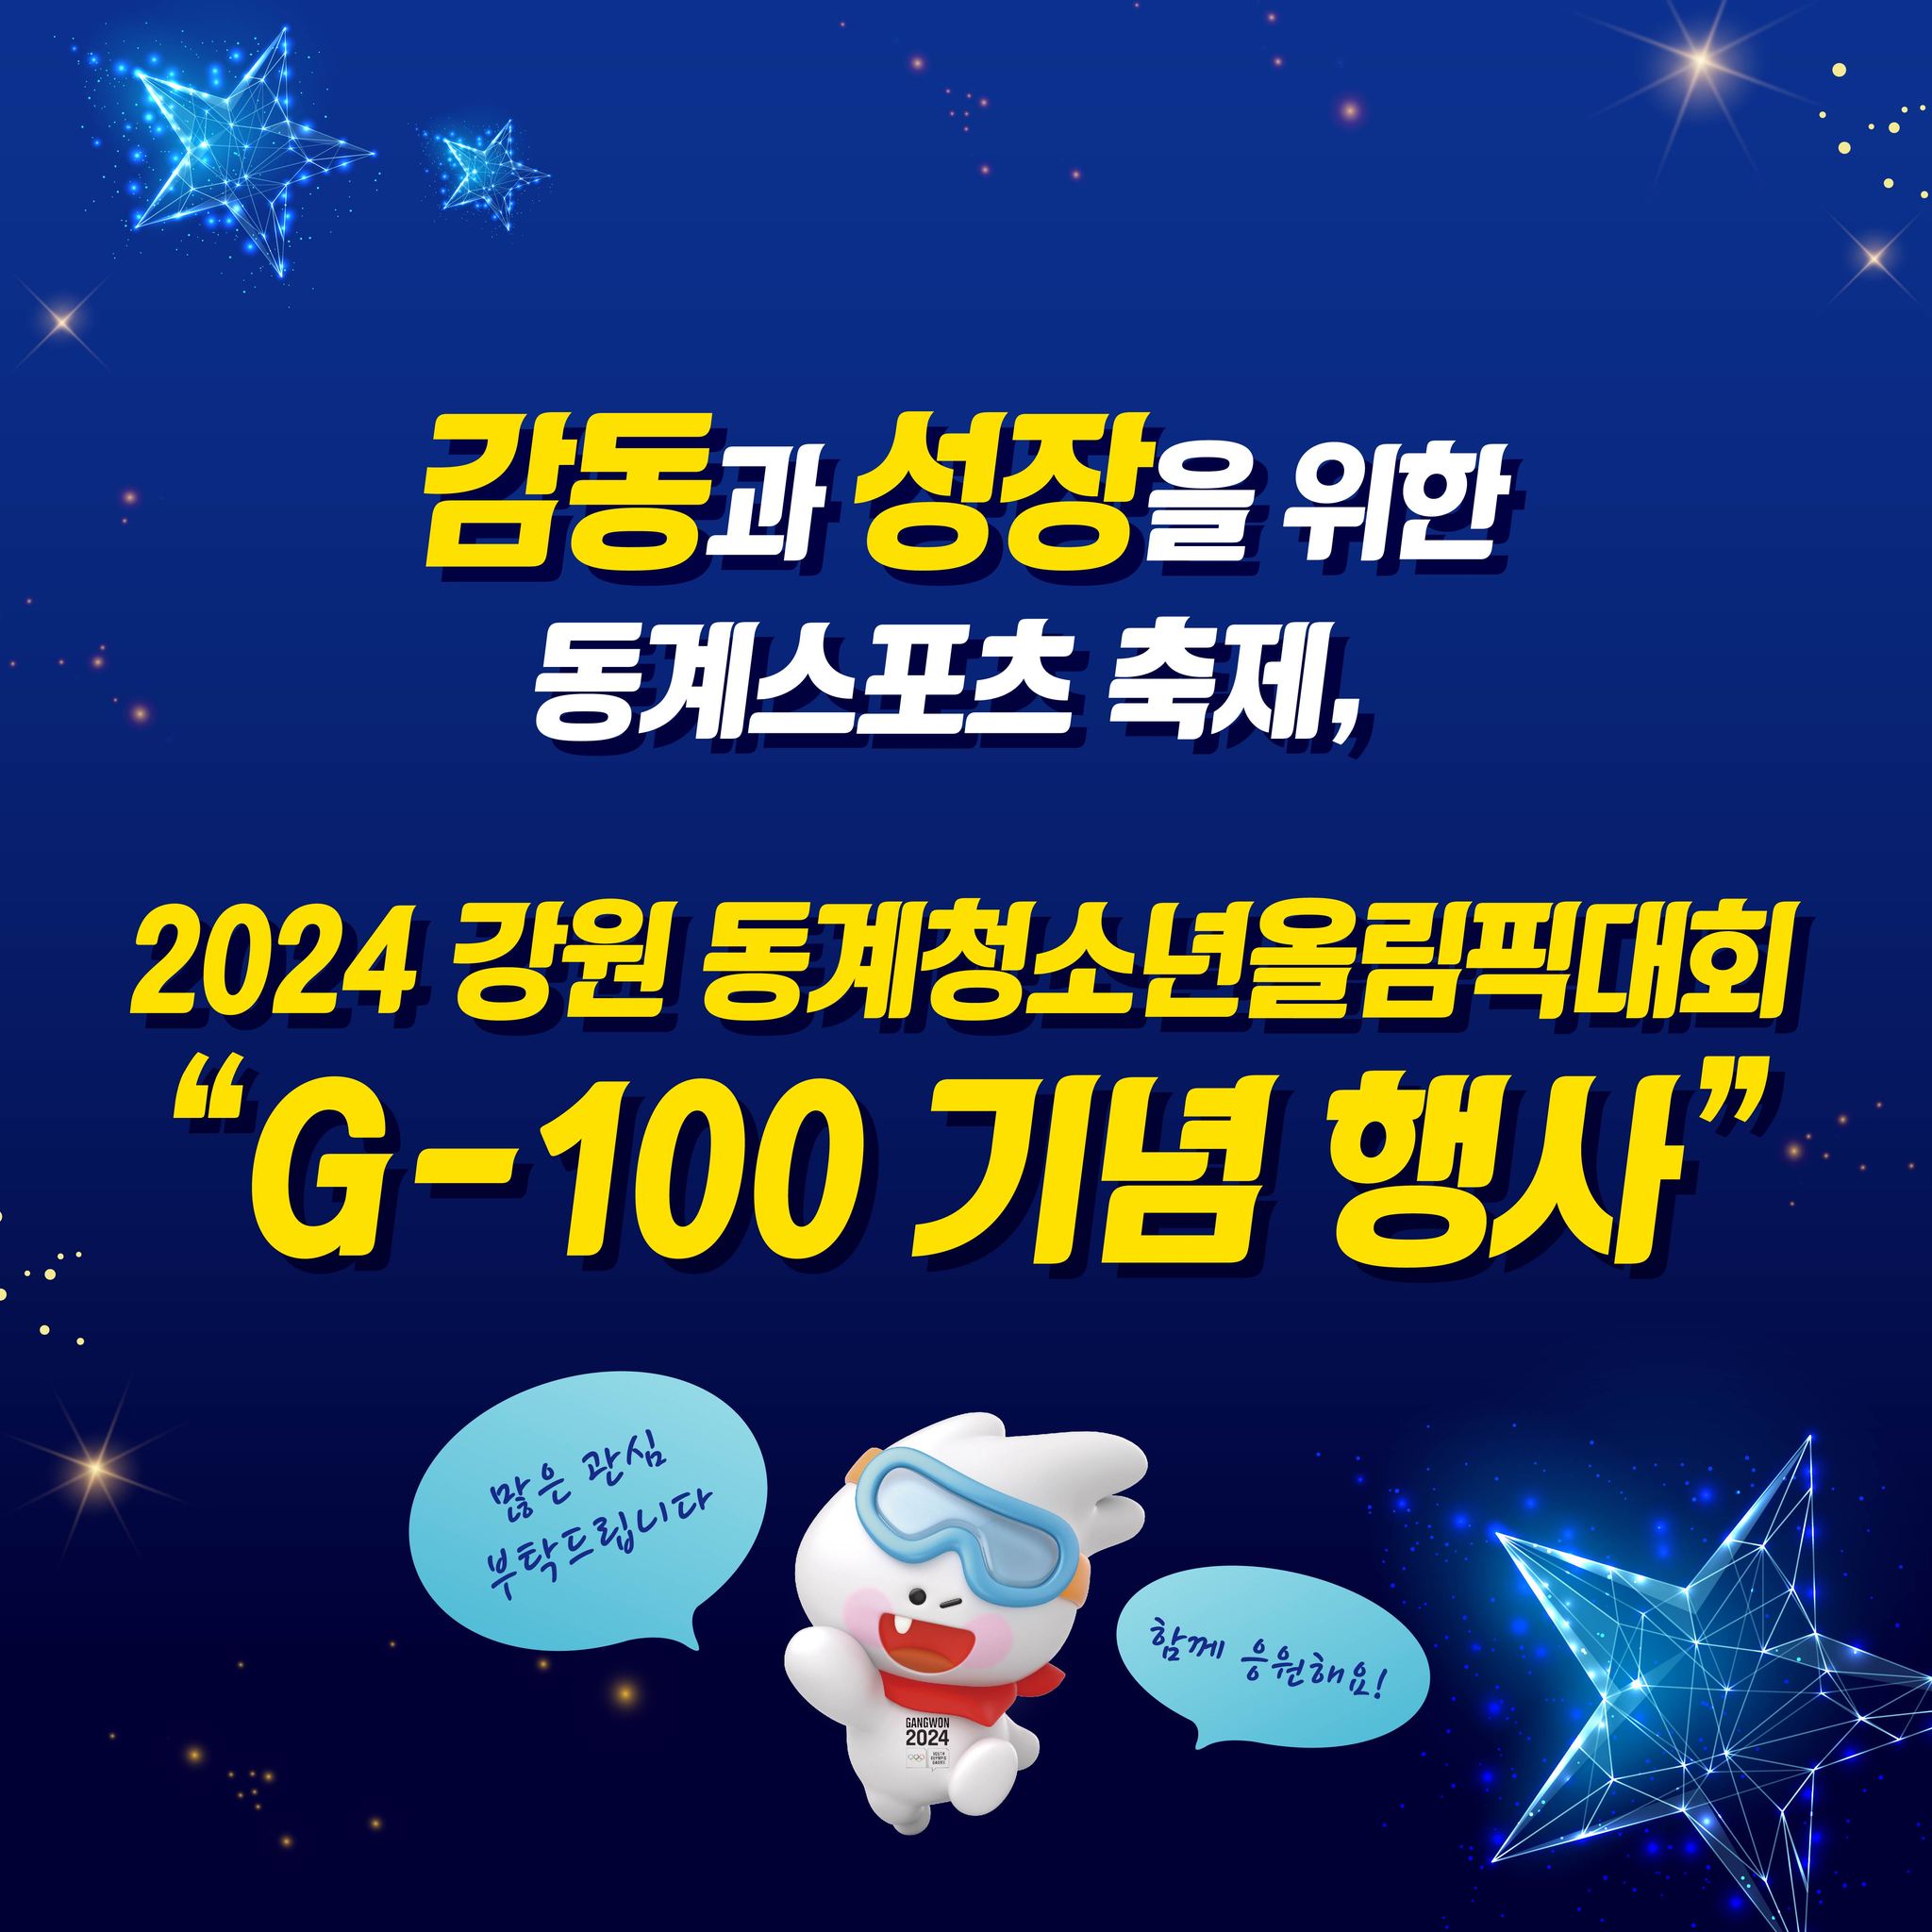 2024 강원 동계청소년올림픽대회 G-100 기념 행사